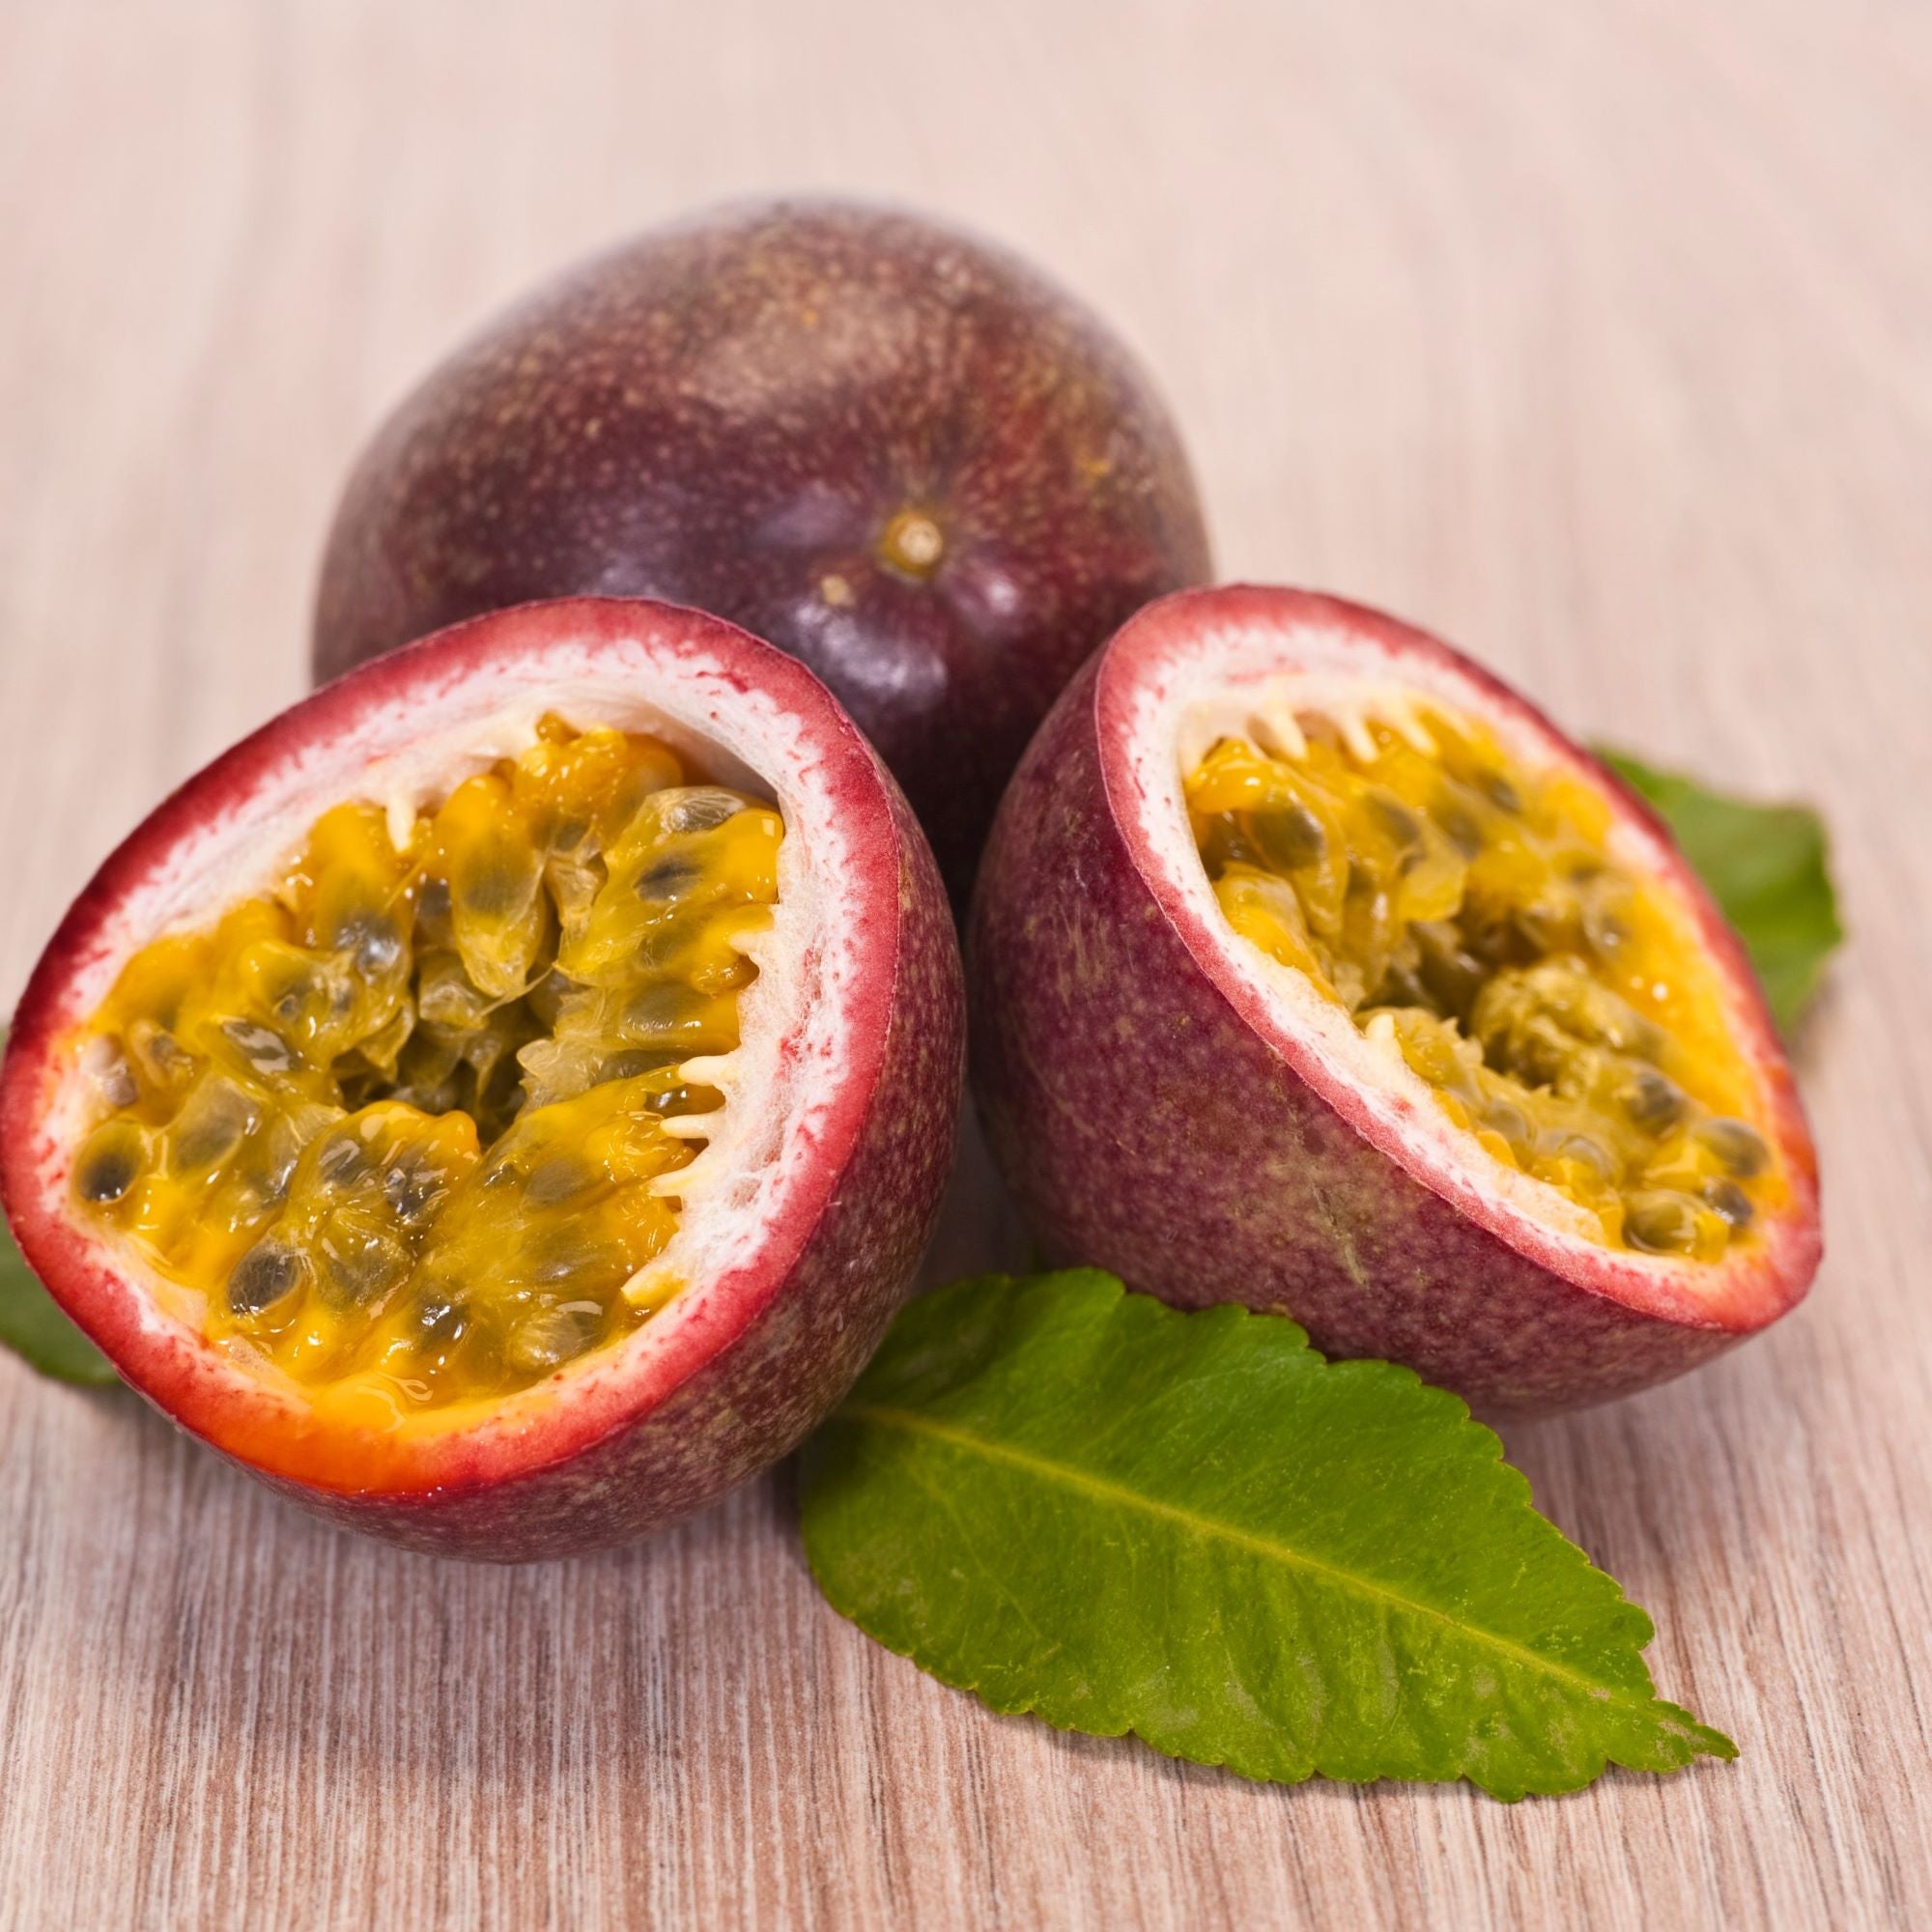 Passionfruit Plants (Prem's)